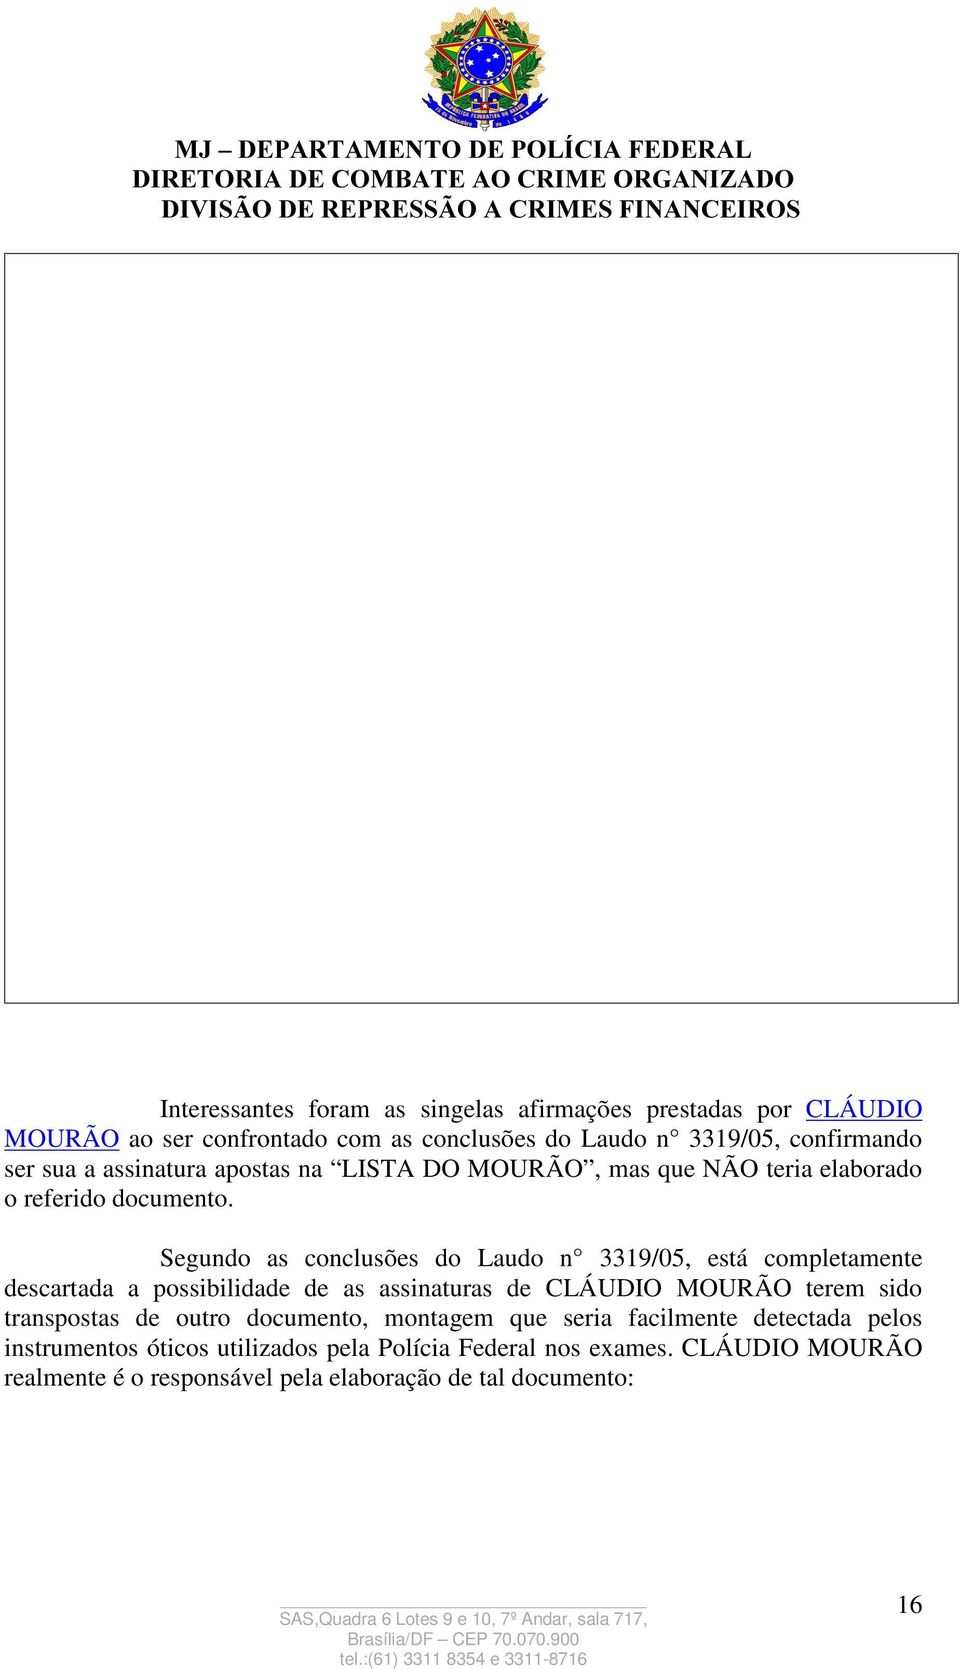 Segundo as conclusões do Laudo n 3319/05, está completamente descartada a possibilidade de as assinaturas de CLÁUDIO MOURÃO terem sido transpostas